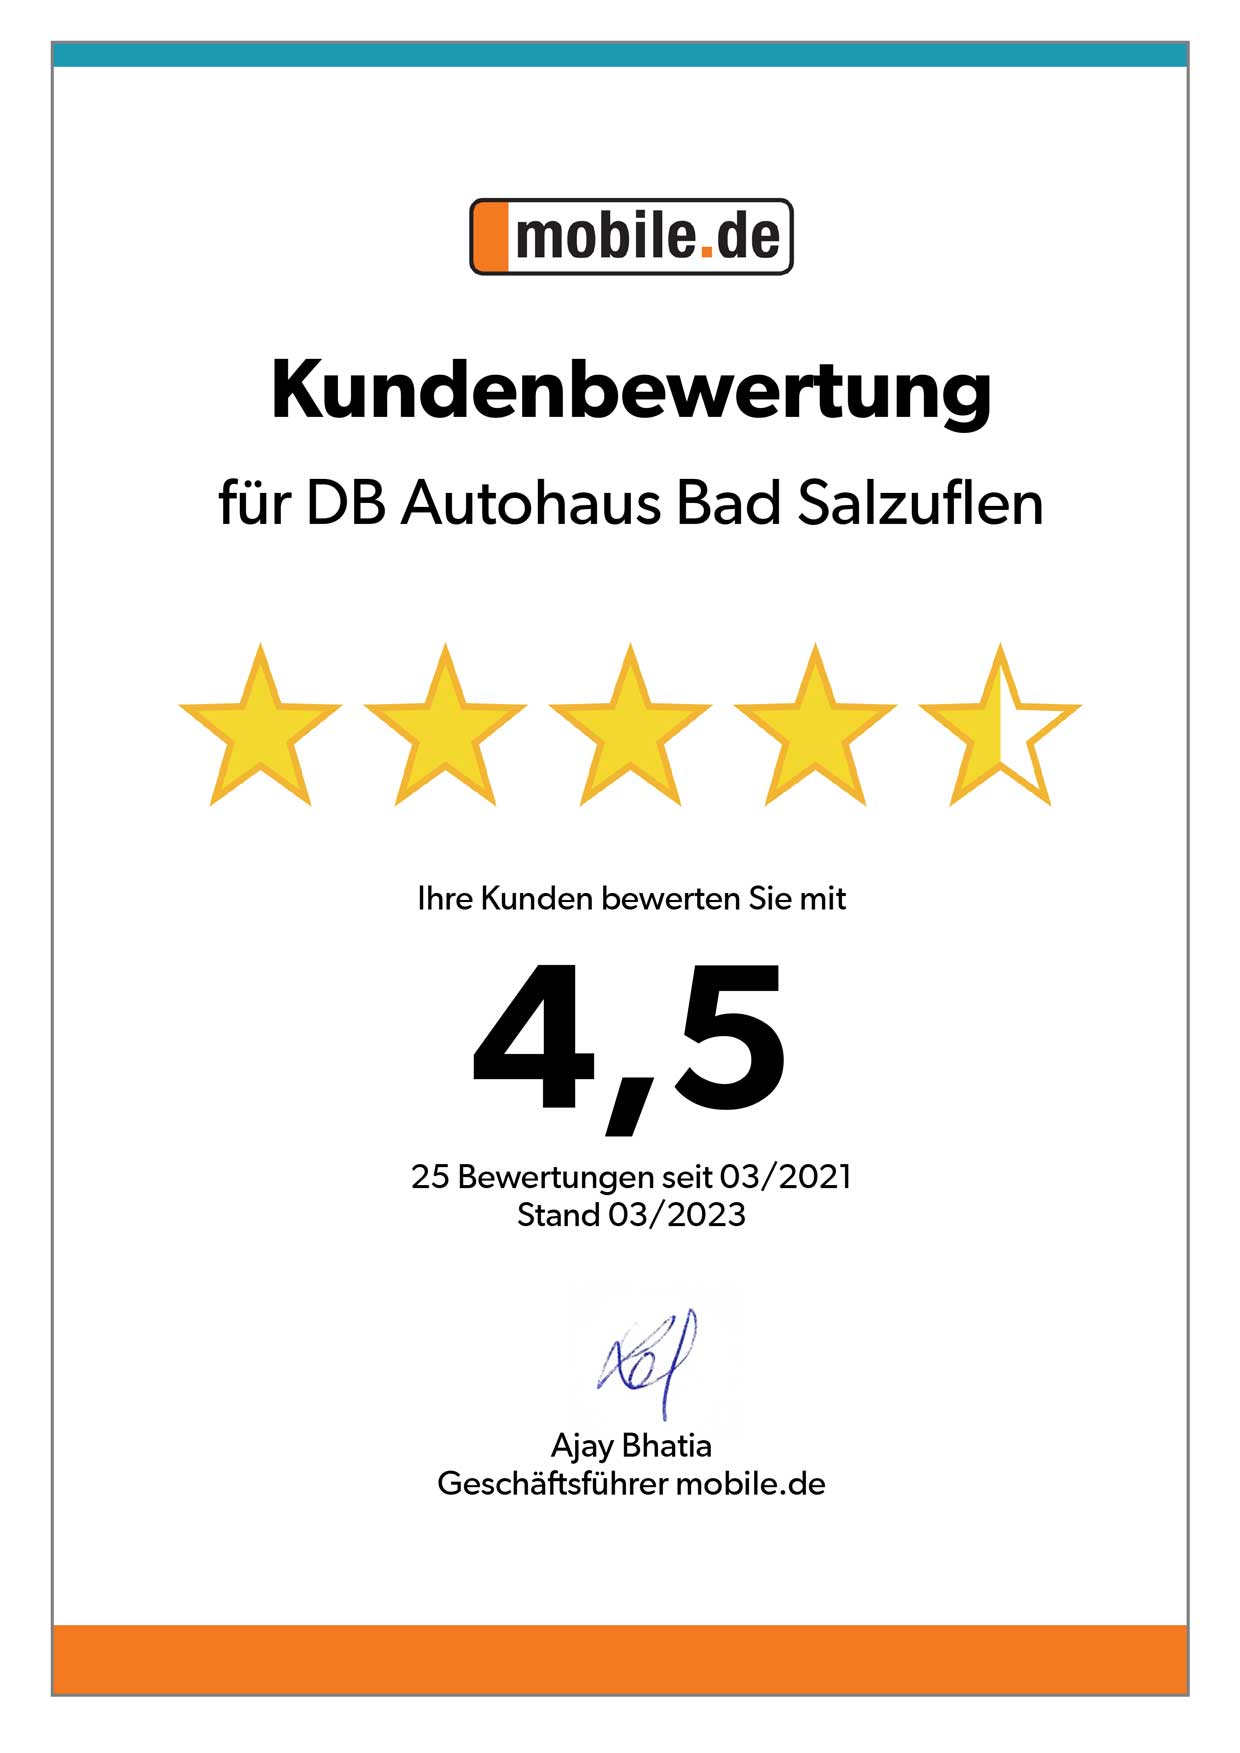 Auszeichnung von mobile.de für DB Autohaus Bad Salzuflen